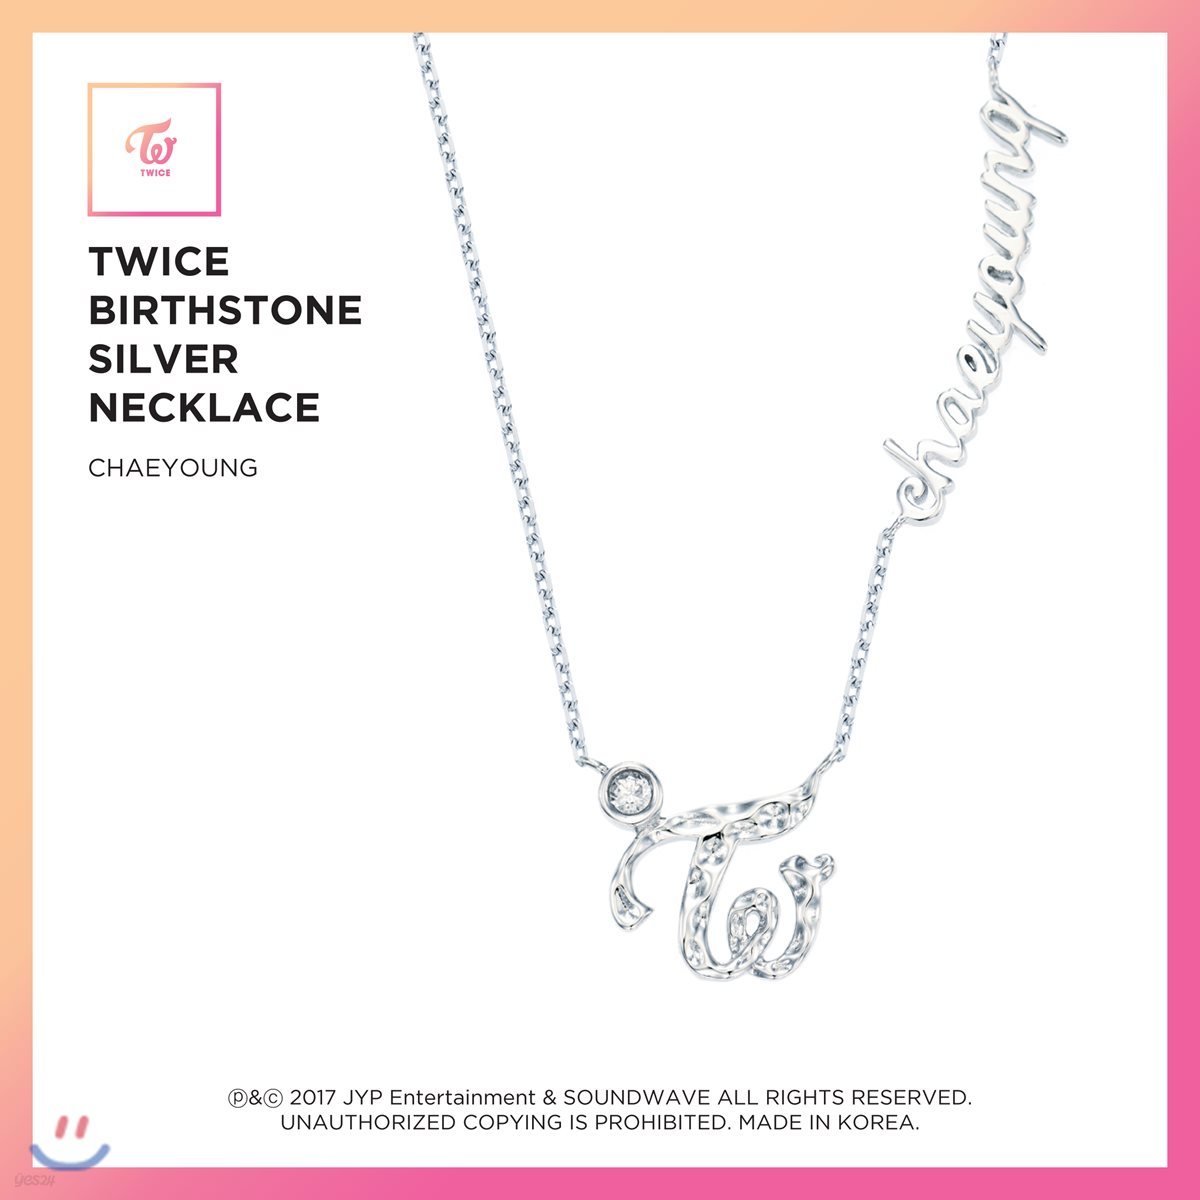 트와이스 (TWICE) - TWICE Birthstone Silver Necklace [Chaeyoung]